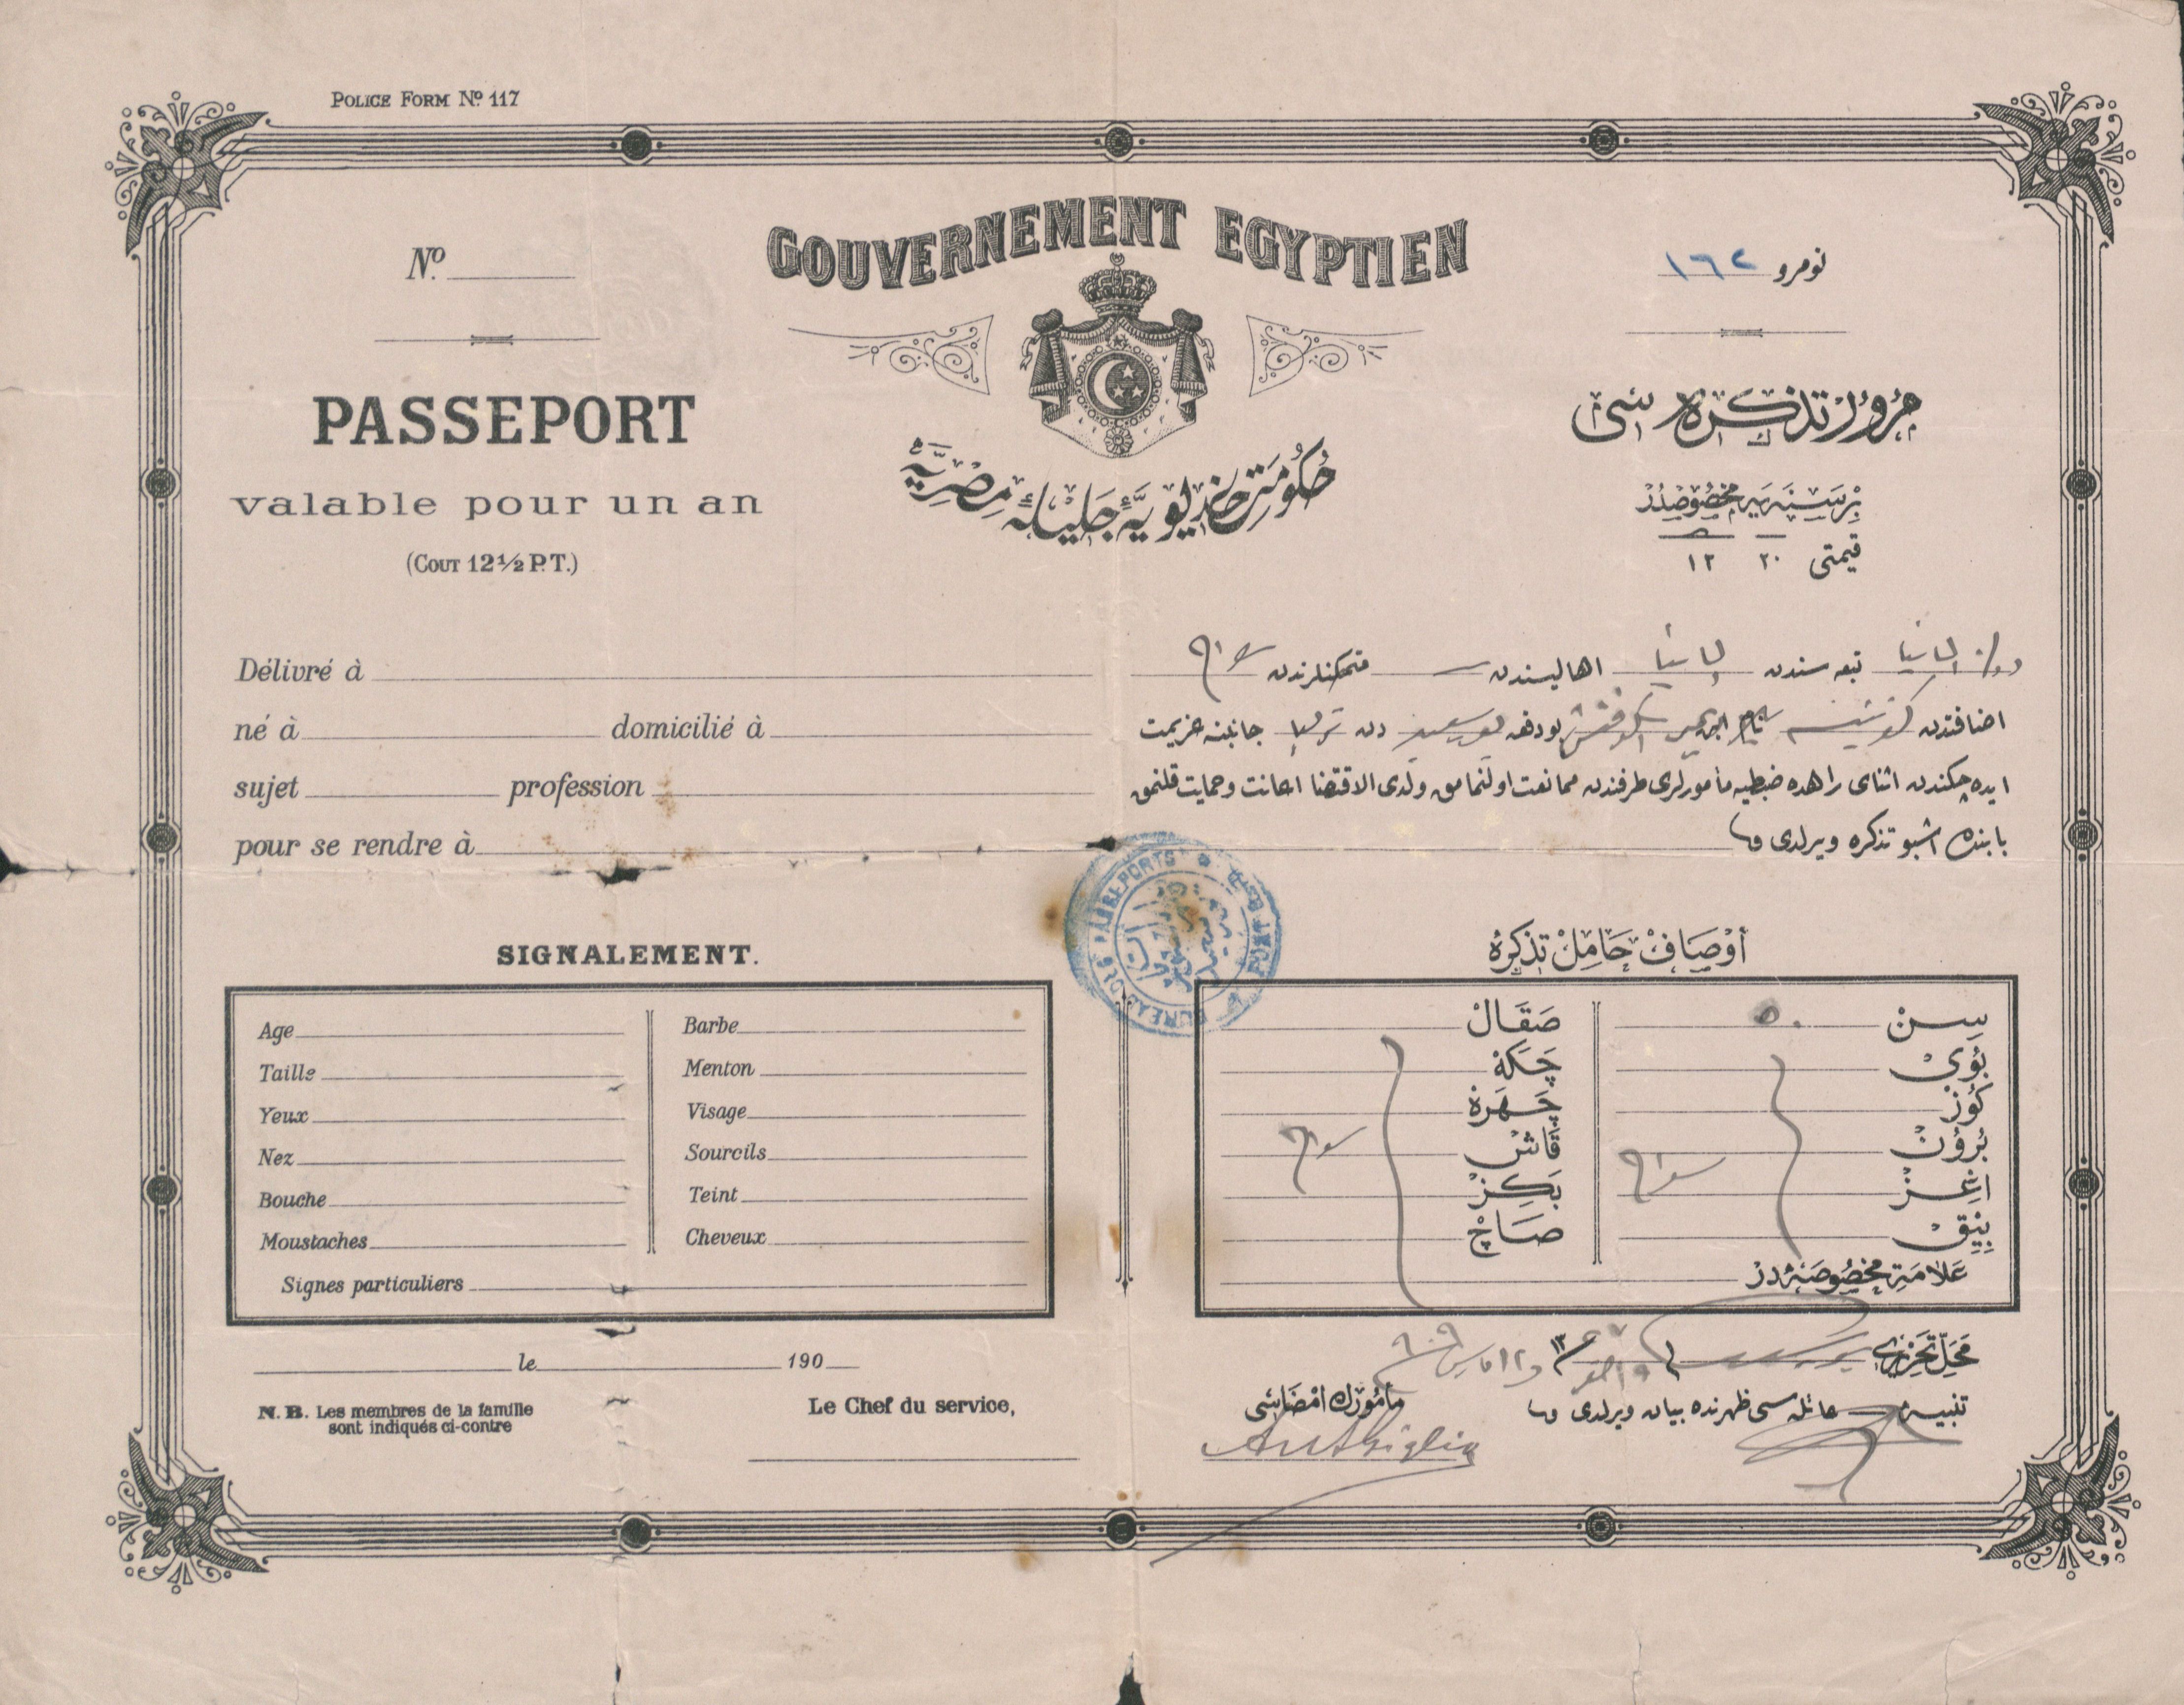 Paszport wystawiony przez wladze egipskie